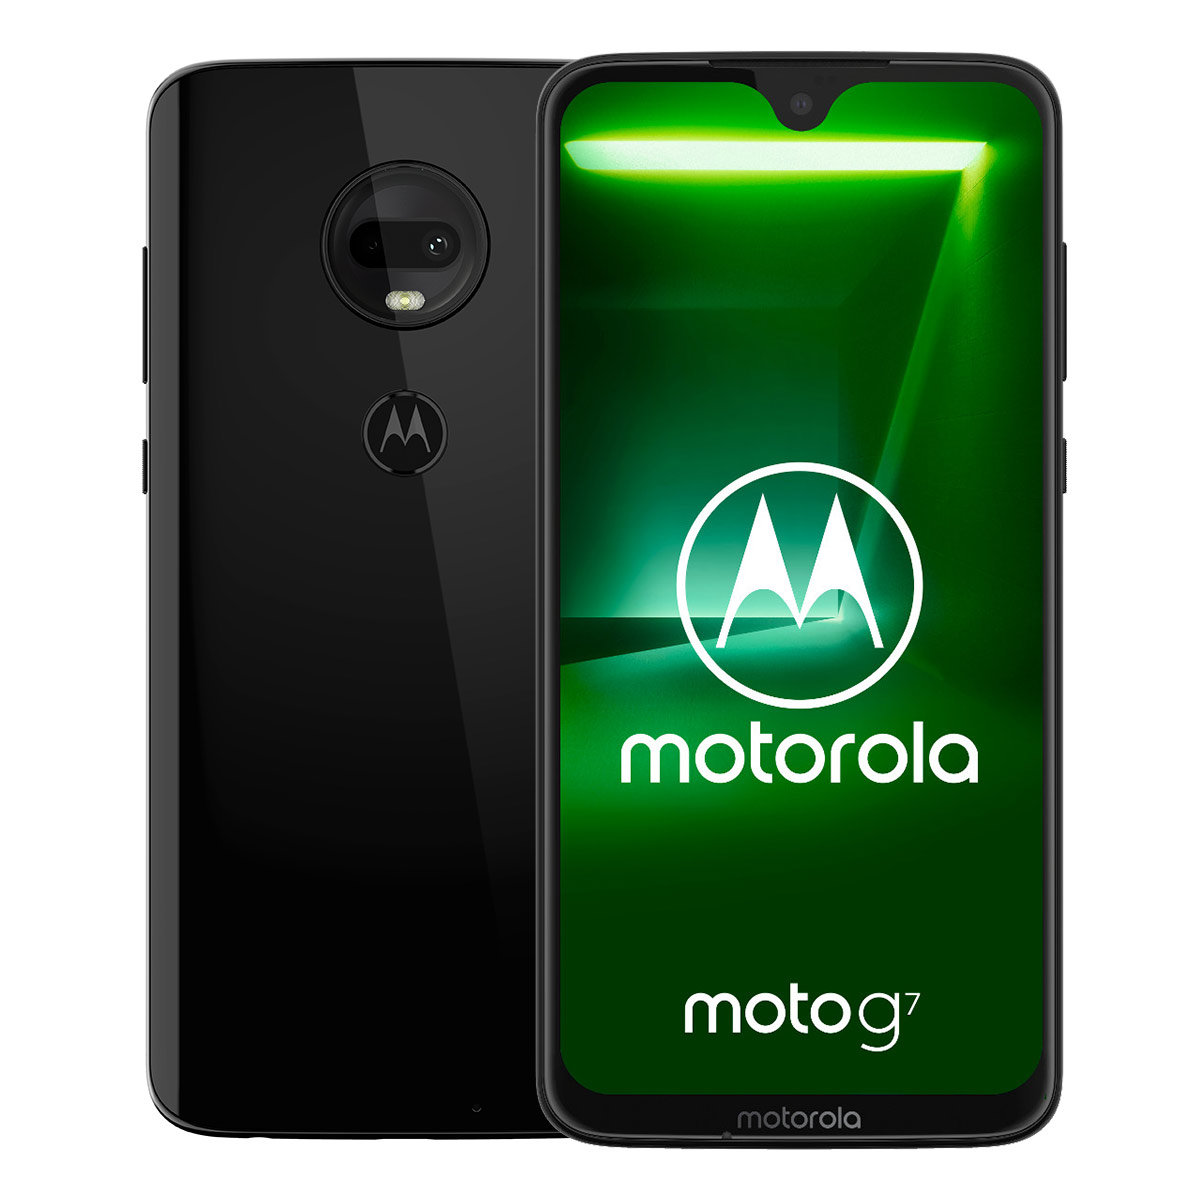 MOTOROLA G7 4/64GB 6.24" Czarny PADY0007PL Smartfon - niskie ceny i opinie  w Media Expert